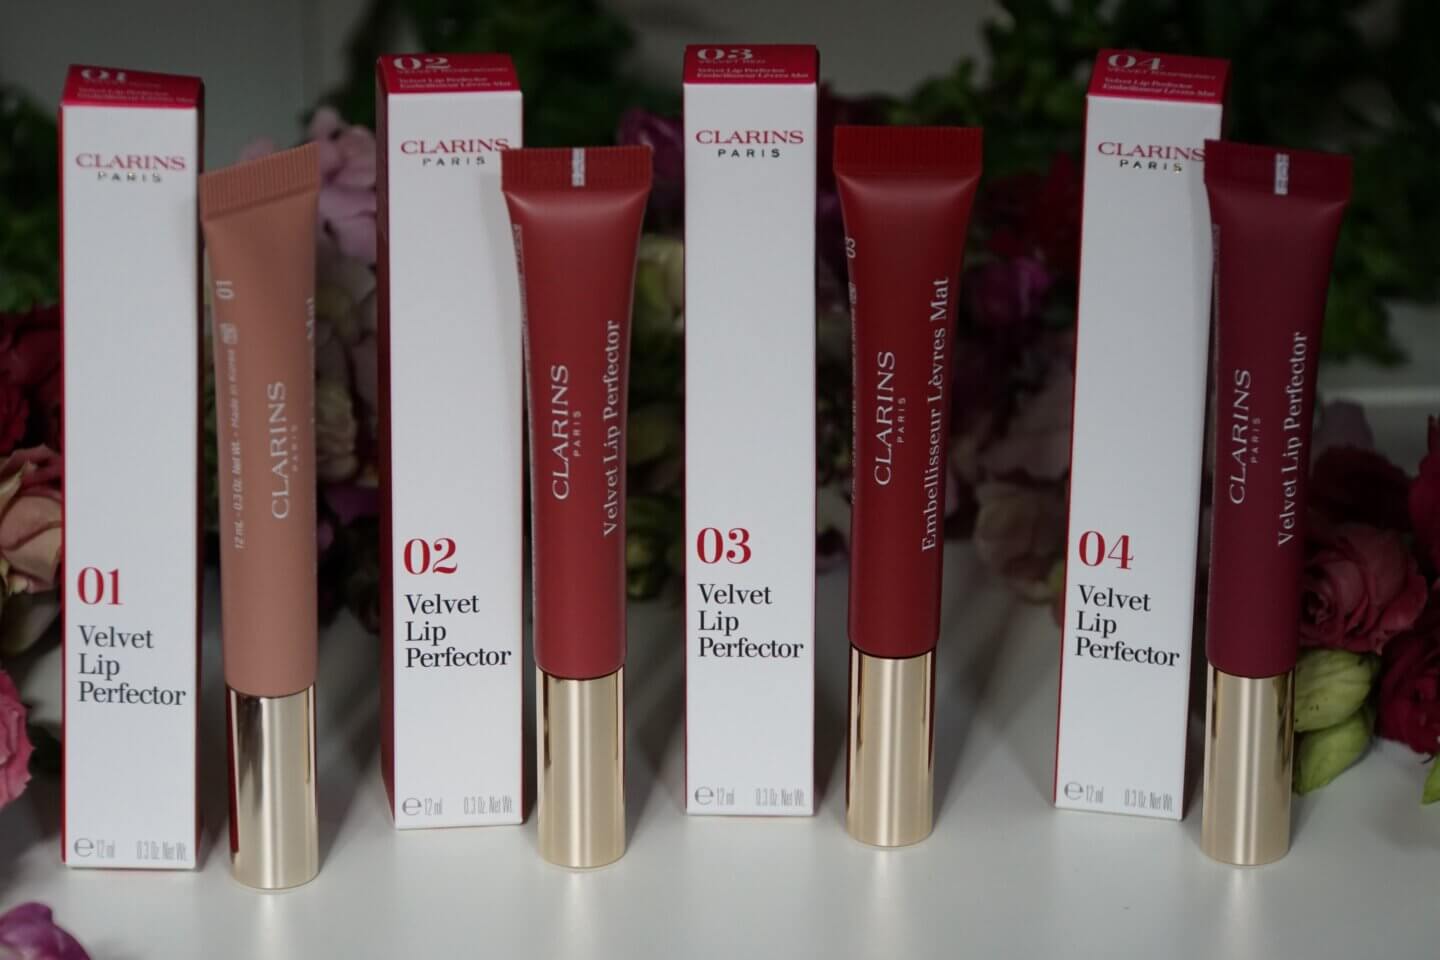 Clarins Velvet Lip Perfector Herbst 2020 Looks - Matte Lippen mit Ü40, Ü50 und Ü60 - Make-up Looks für Frauen über 40